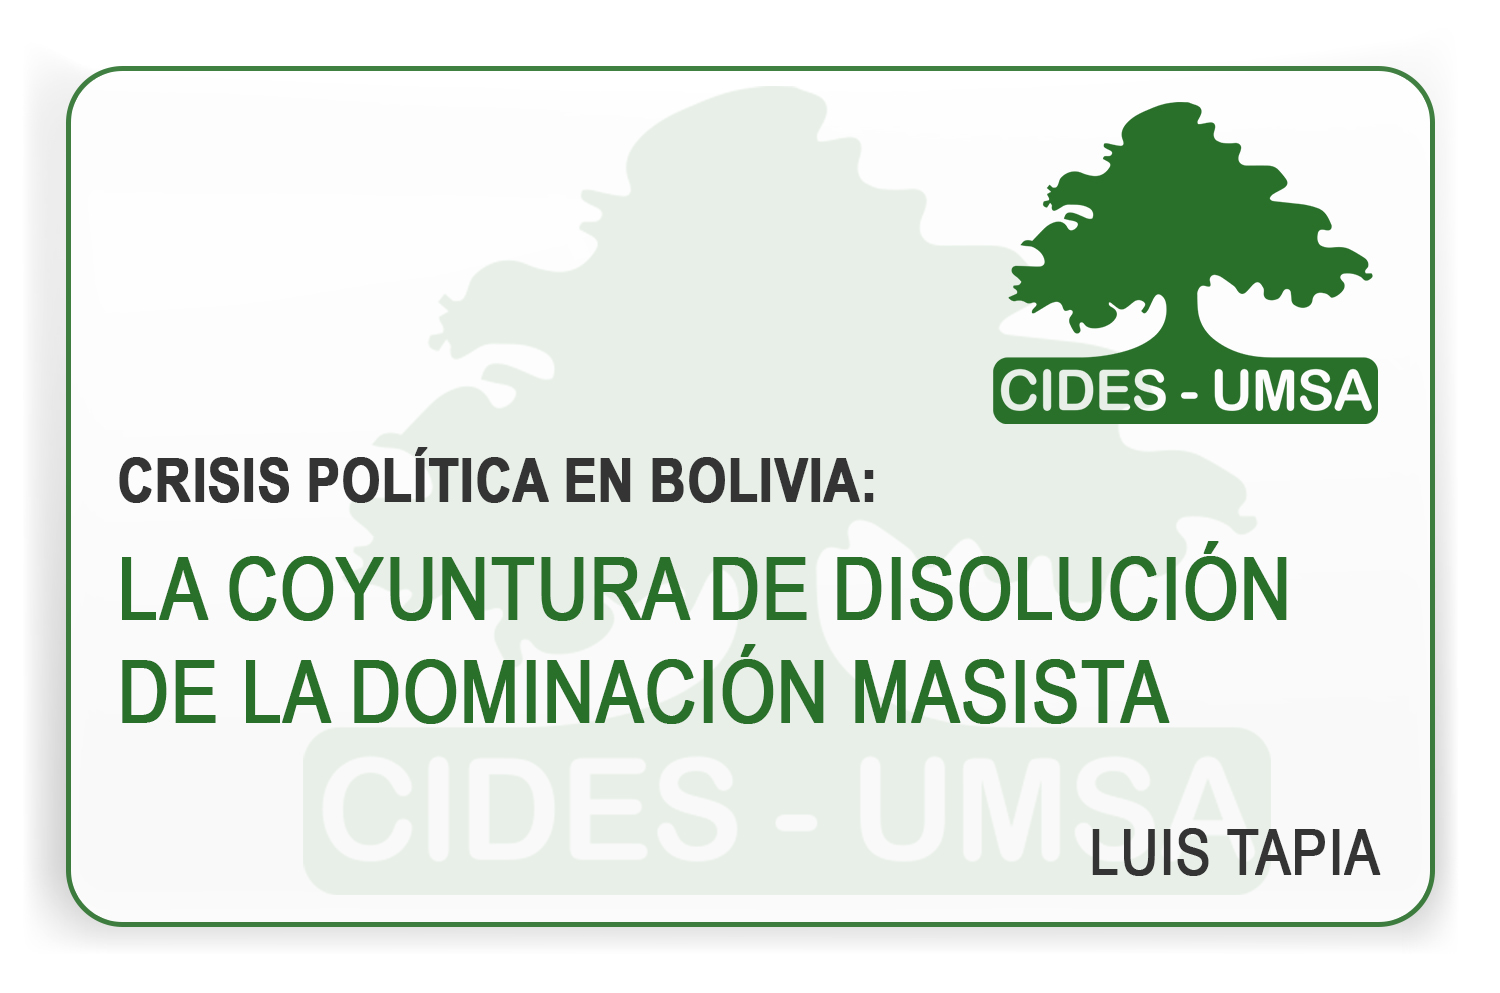 CRISIS POLÍTICA EN BOLIVIA: LA COYUNTURA DE DISOLUCIÓN DE LA DOMINACIÓN MASISTA